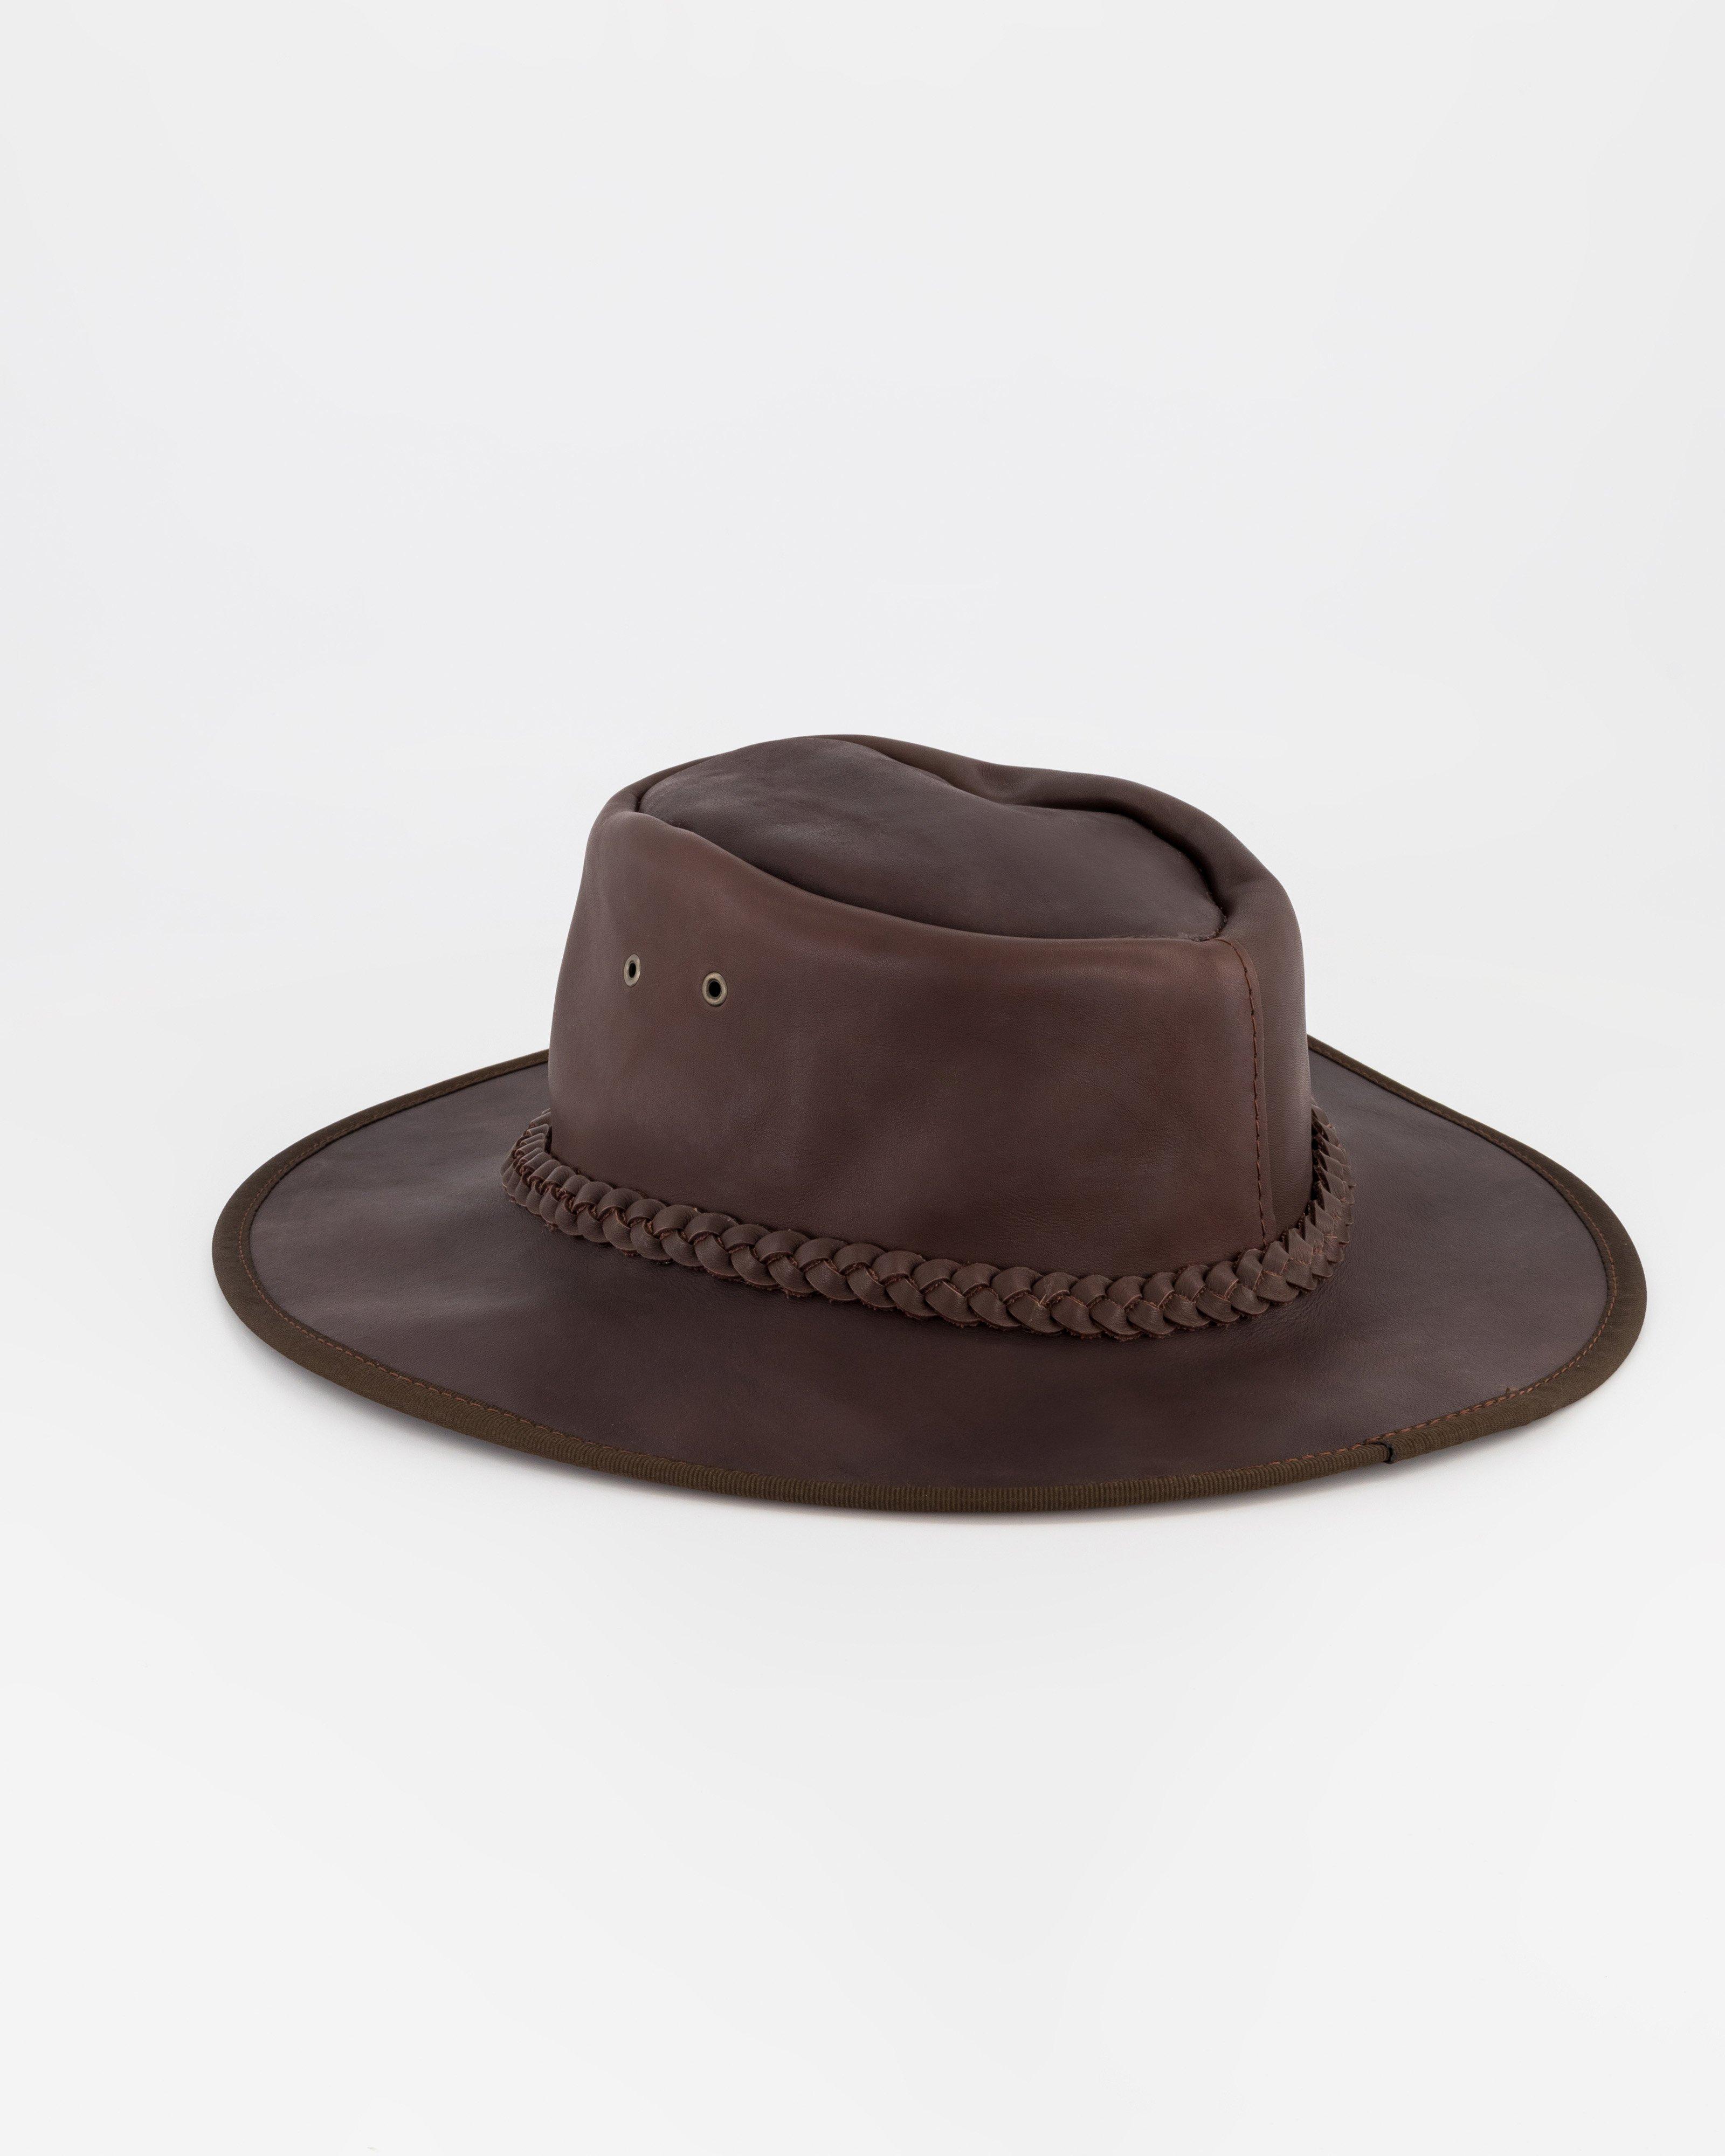 Cape Union Survivor Leather Hat